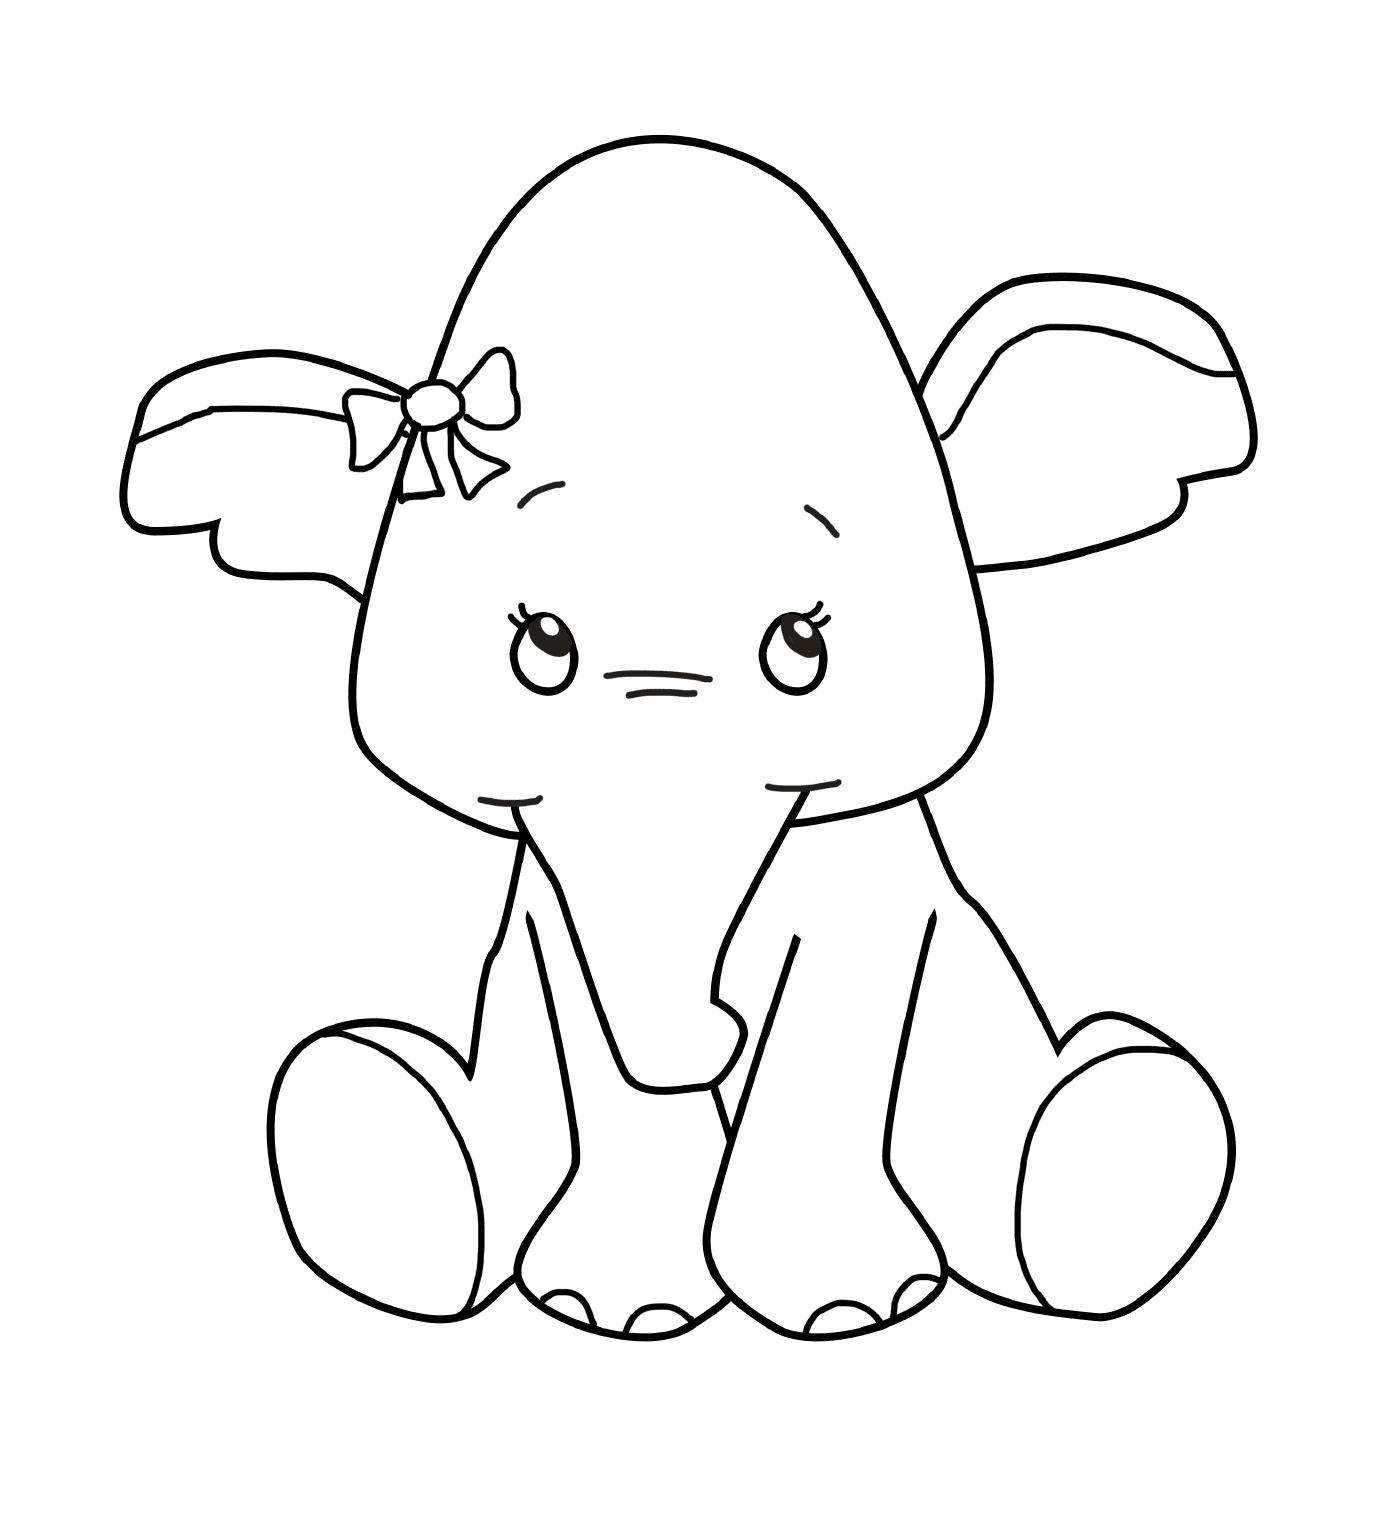  Un elefante bambino con un nodo sulla testa 